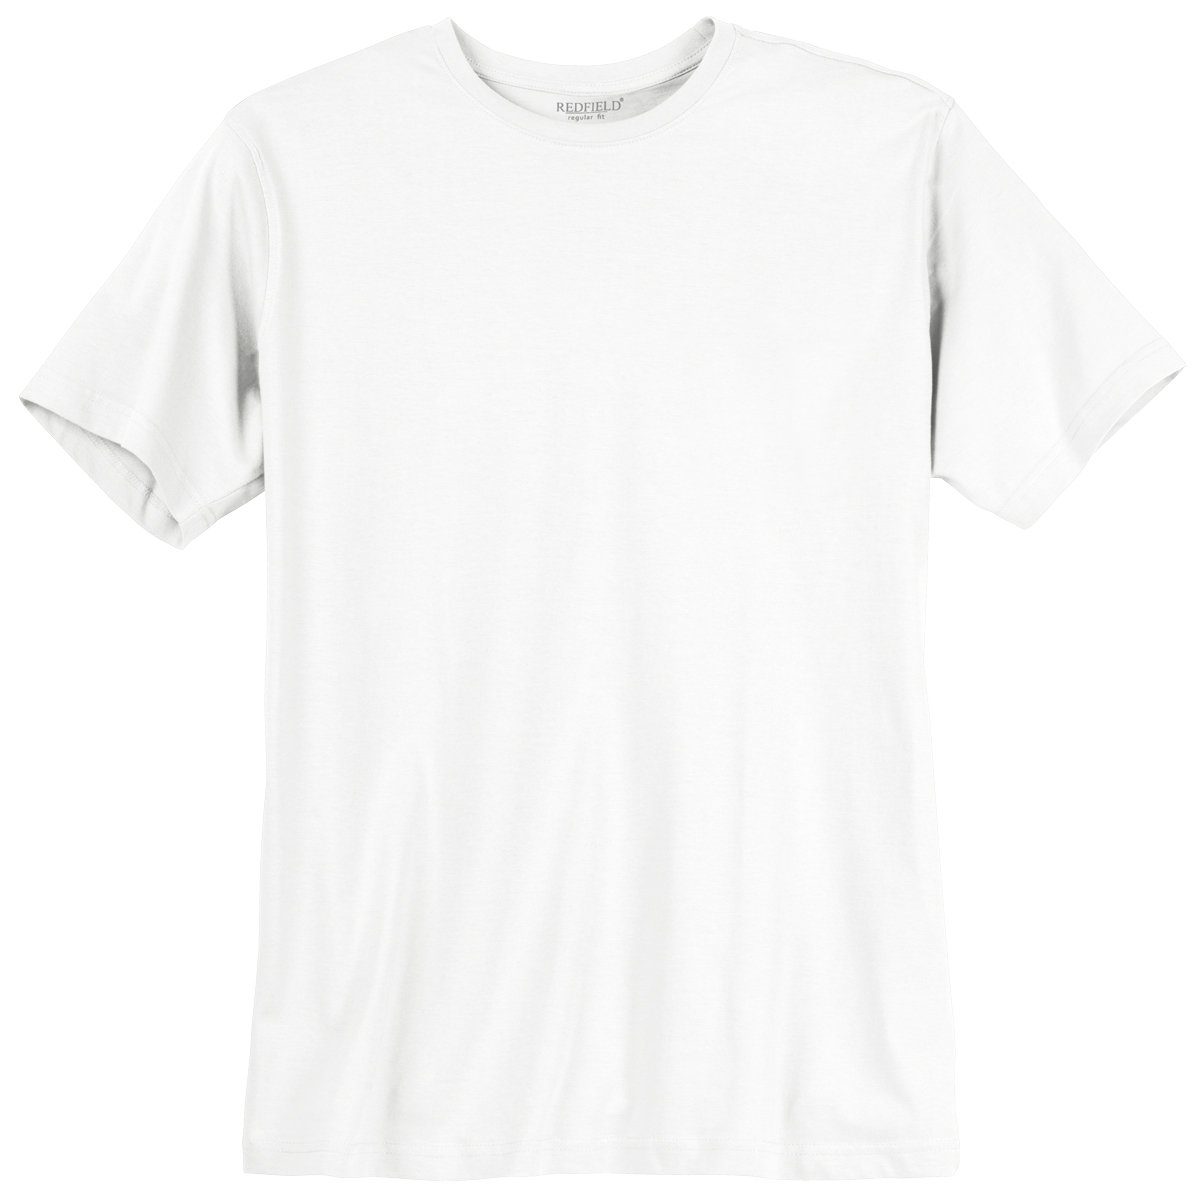 Im Angebot zu einem supergünstigen Preis! redfield Rundhalsshirt Übergrößen T-Shirt Redfield weiß